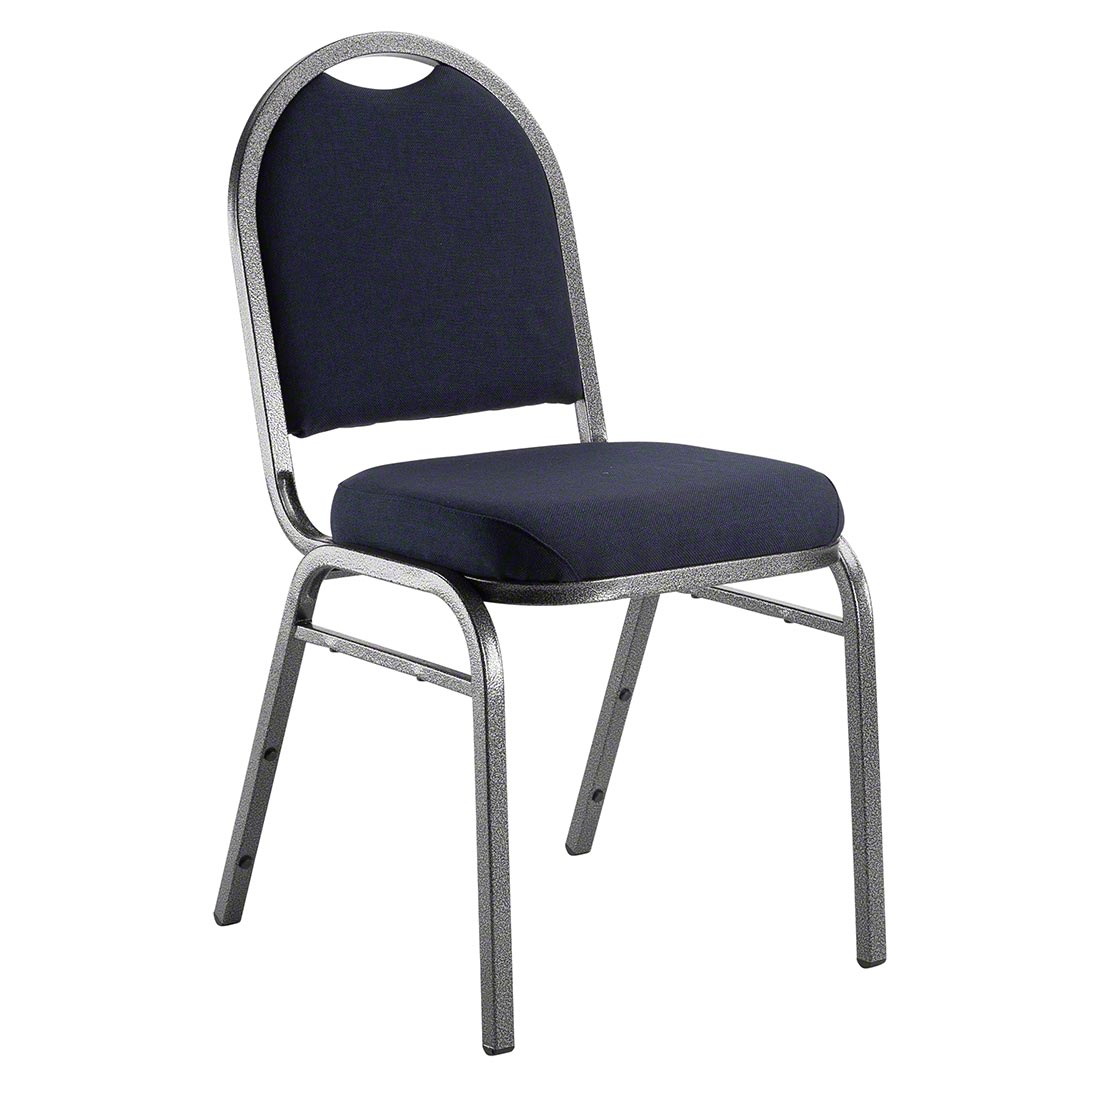 Banquet chair Serie 9300